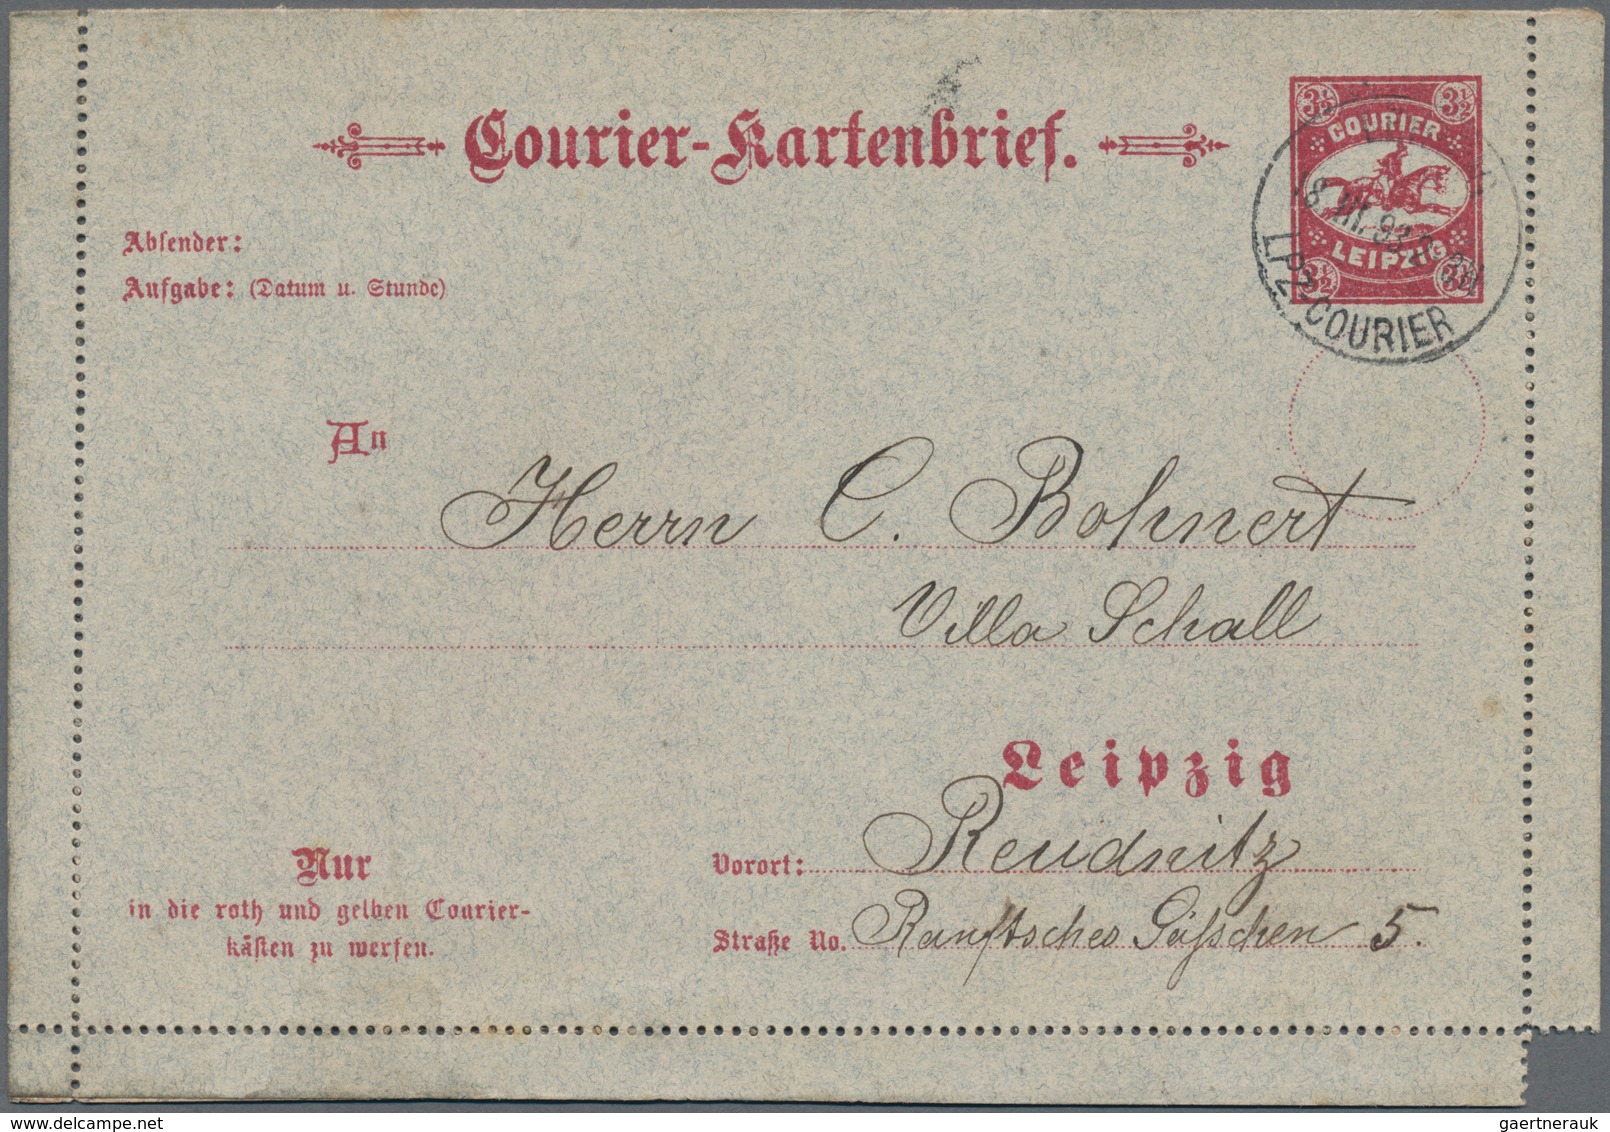 Deutsches Reich - Privatpost (Stadtpost): LEIPZIG: Courier Kartenbrief Mit "An", Rs. Kein Aufdruck, - Privatpost